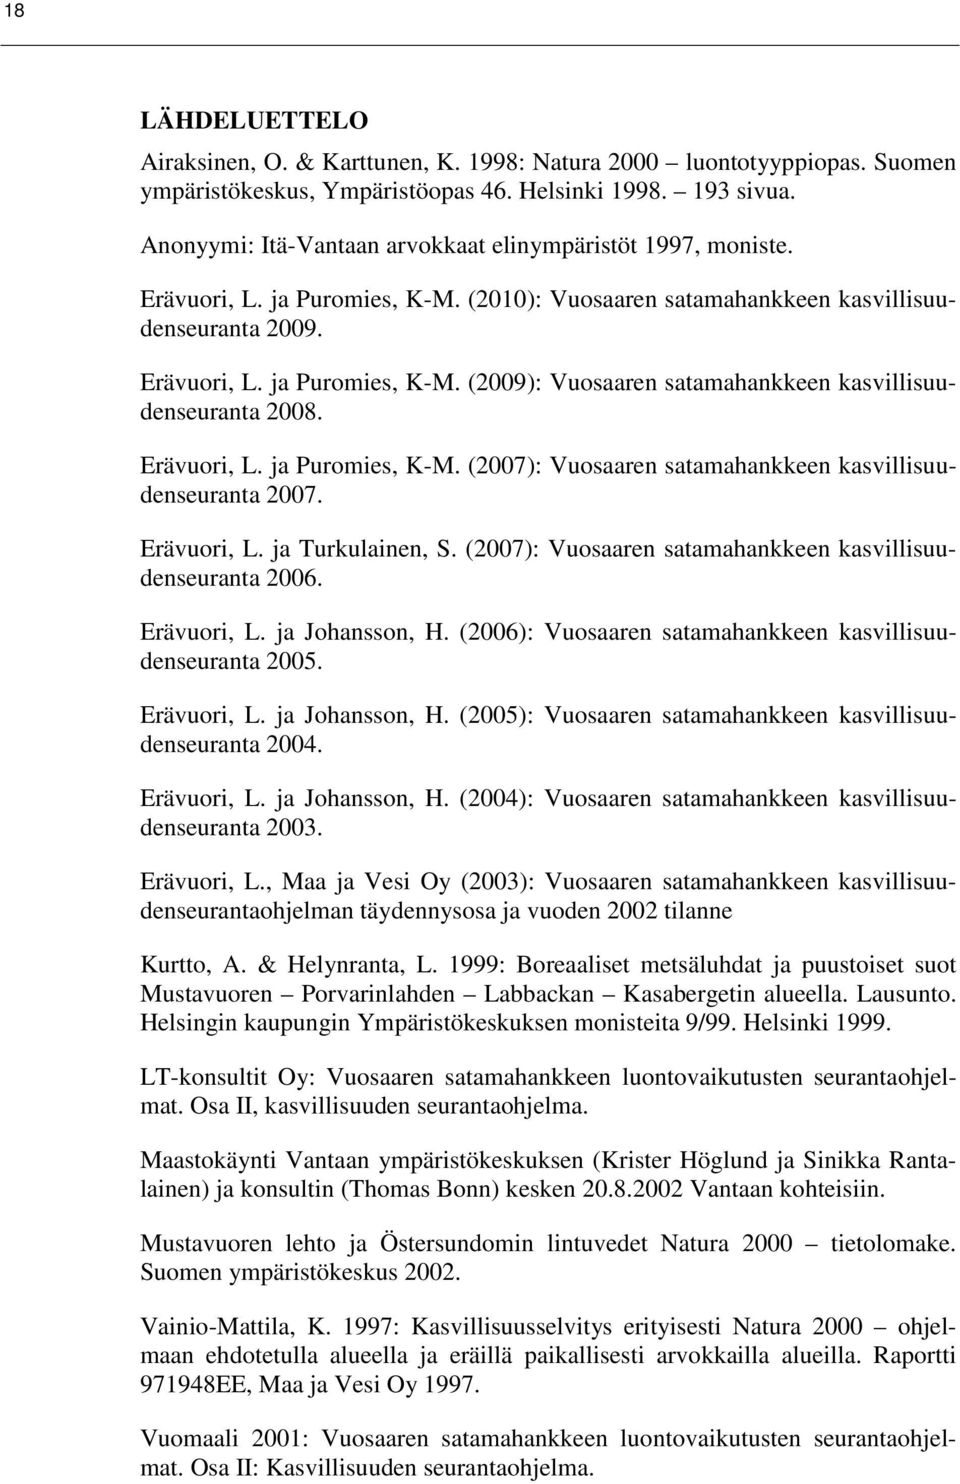 Erävuori, L. ja Puromies, K-M. (2007): Vuosaaren satamahankkeen kasvillisuudenseuranta 2007. Erävuori, L. ja Turkulainen, S. (2007): Vuosaaren satamahankkeen kasvillisuudenseuranta 2006. Erävuori, L. ja Johansson, H.